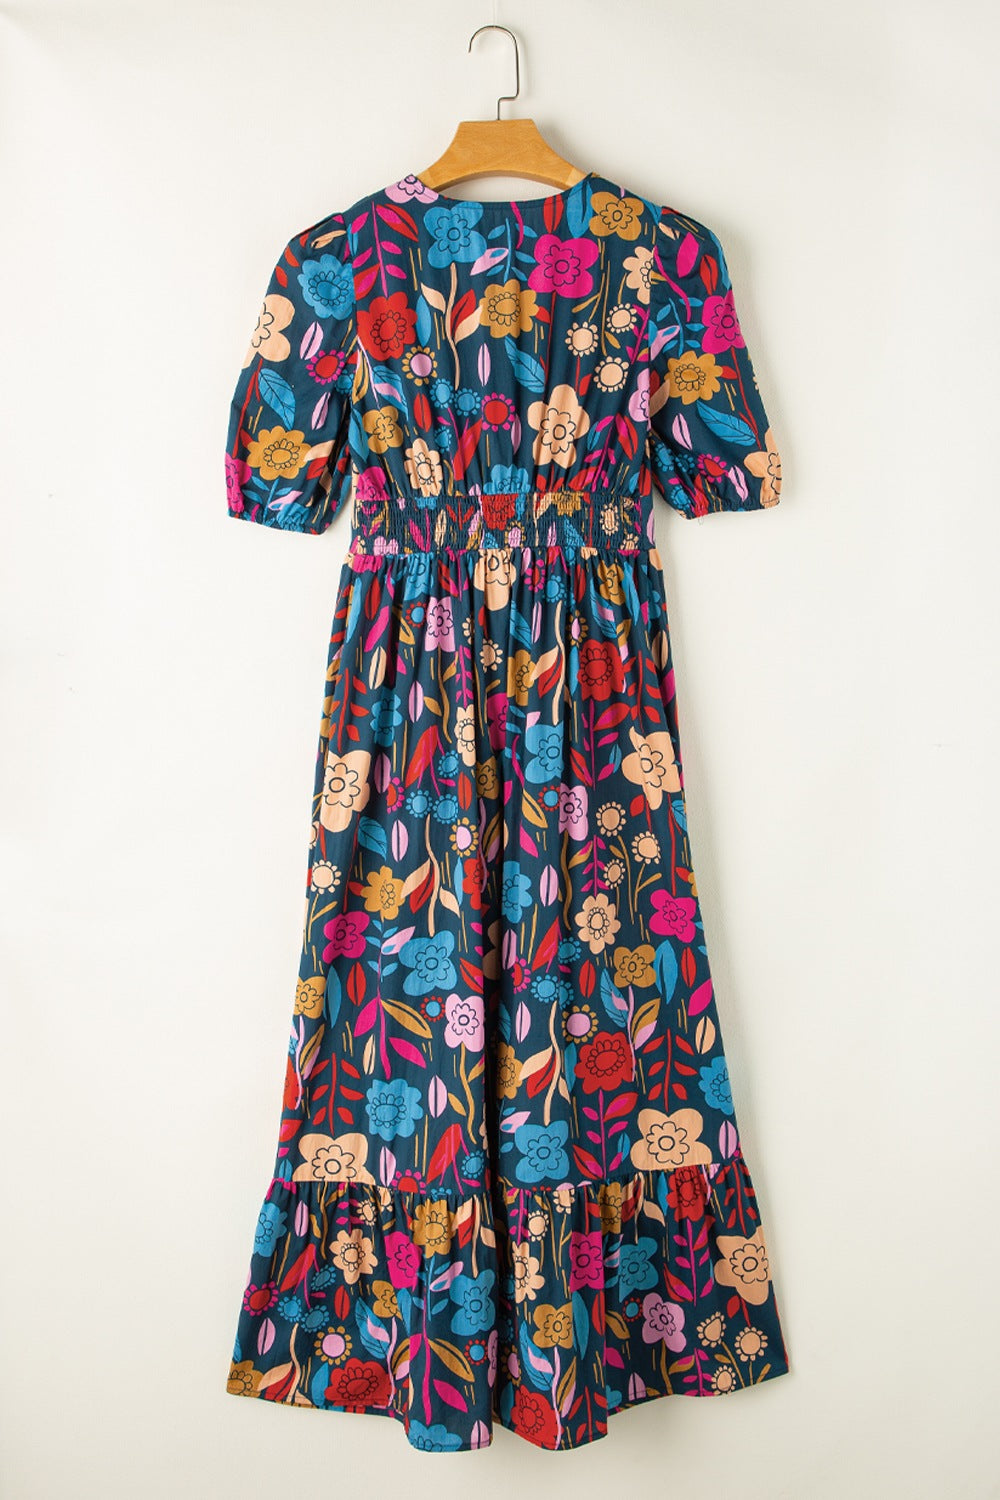 TEEK - Multicolor Printed Notched Puff Sleeve Dress DRESS TEEK Trend   